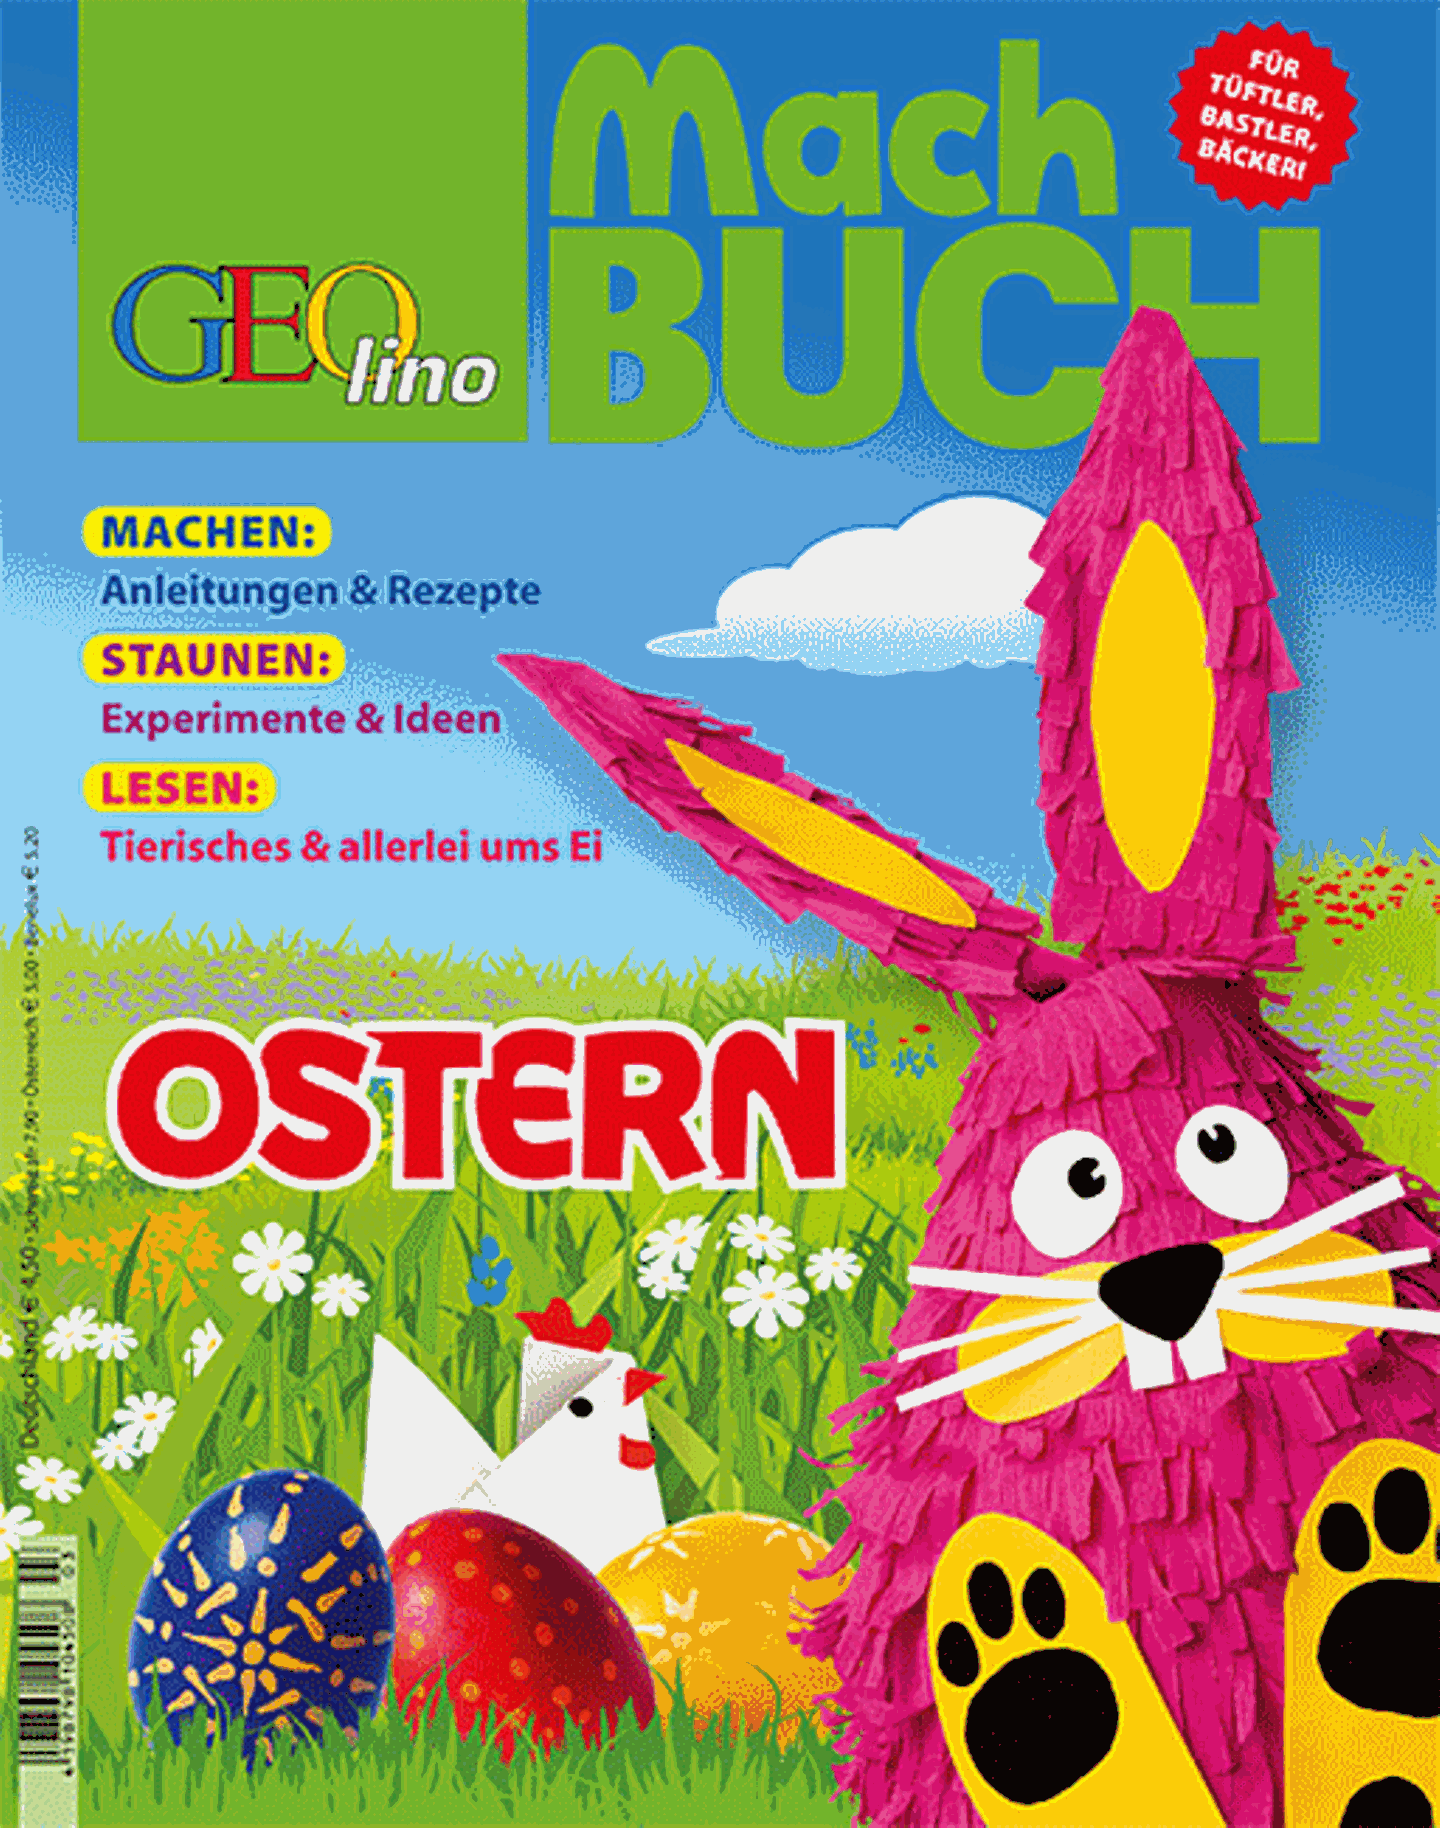 Das GEOlino-Machbuch: Ostern